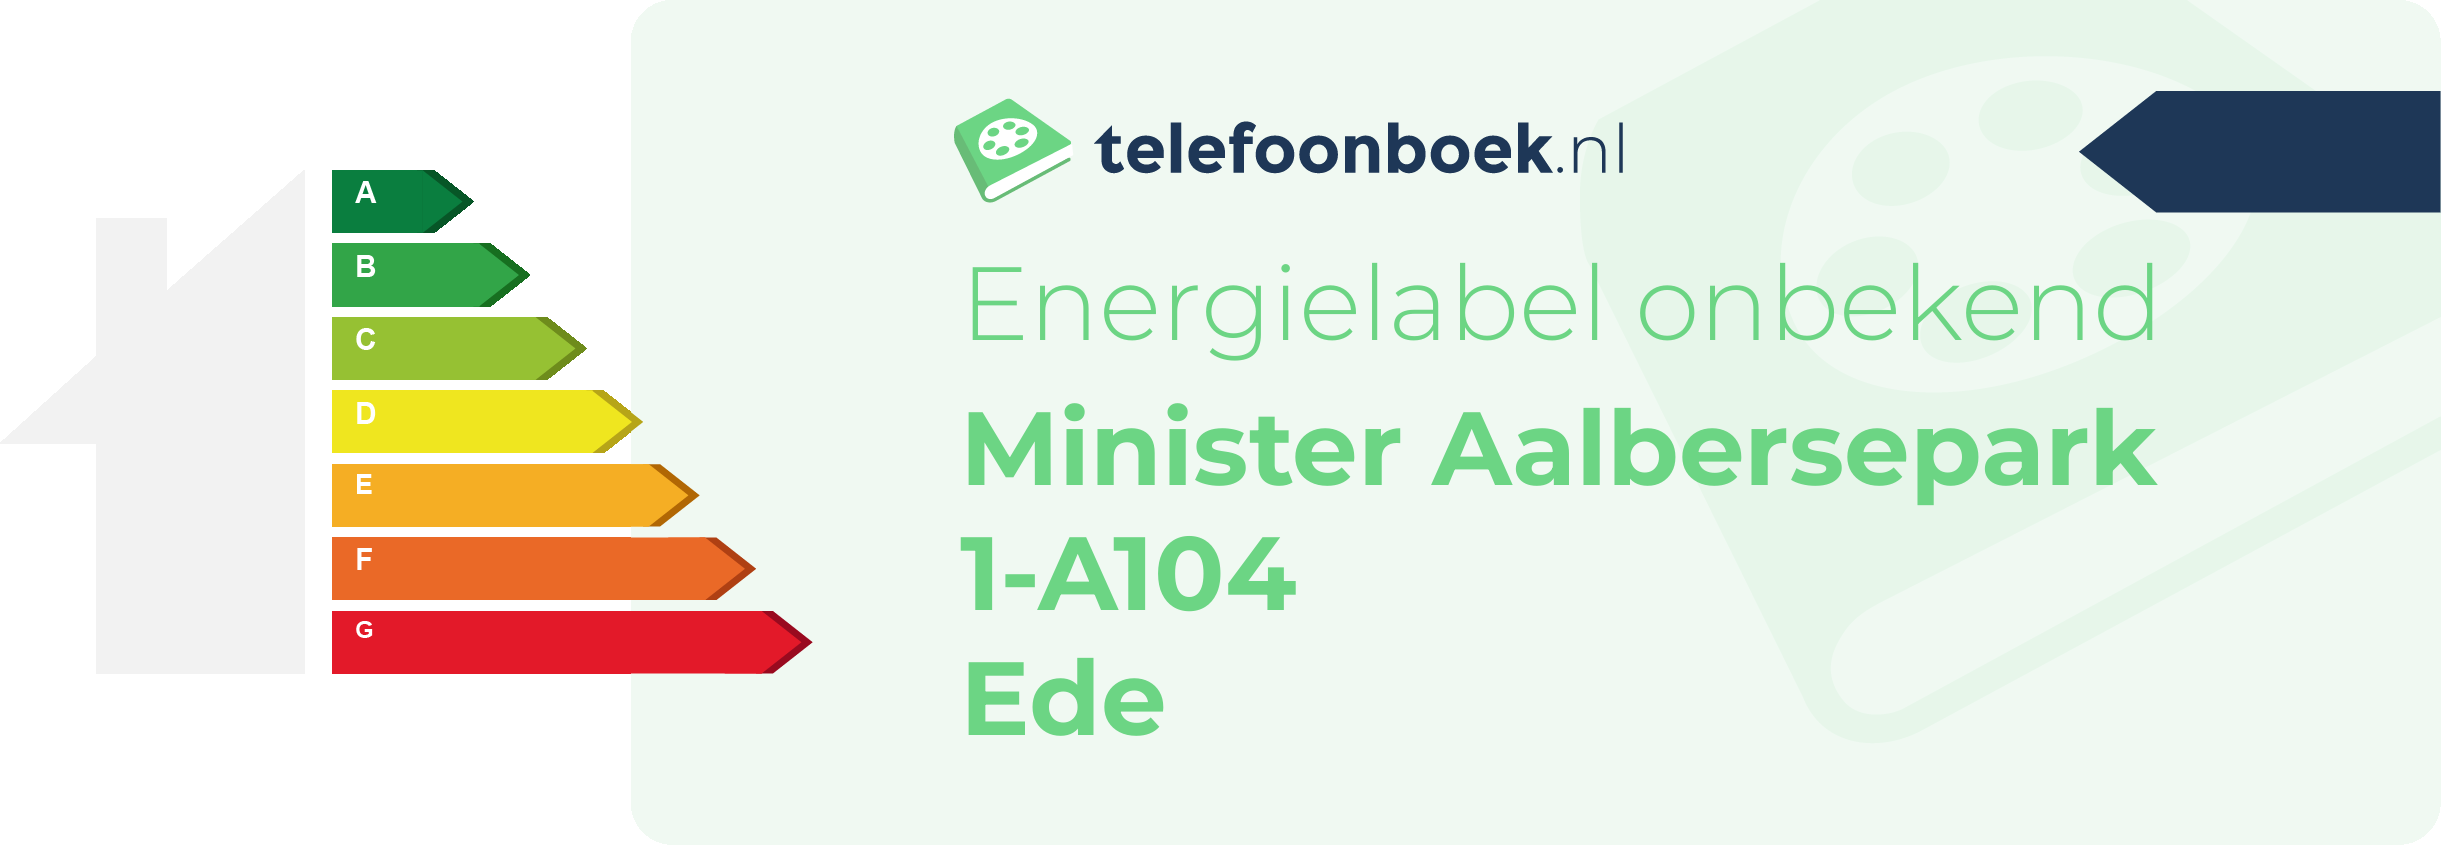 Energielabel Minister Aalbersepark 1-A104 Ede